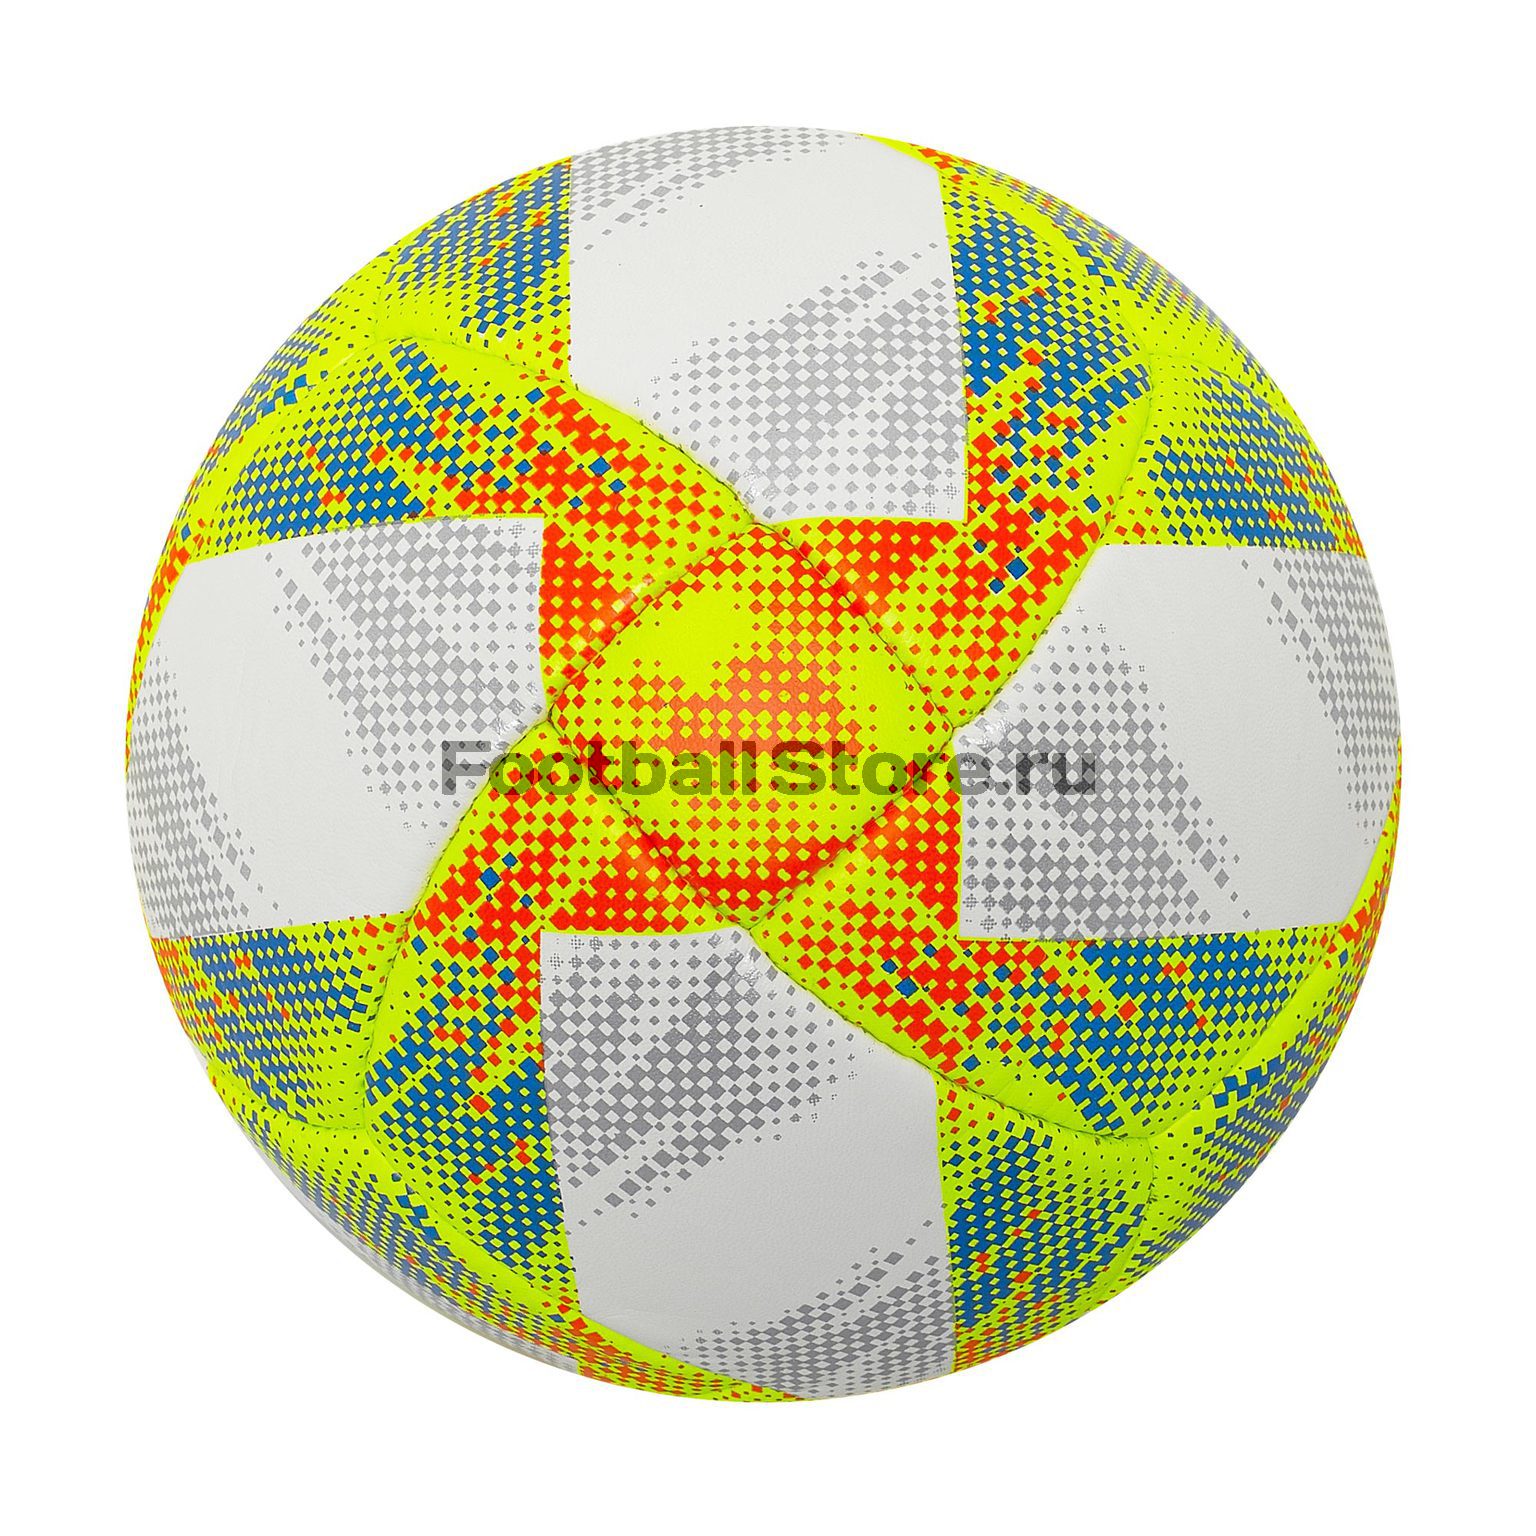 Мяч футбольный Adidas Conext19 Pro DN8635